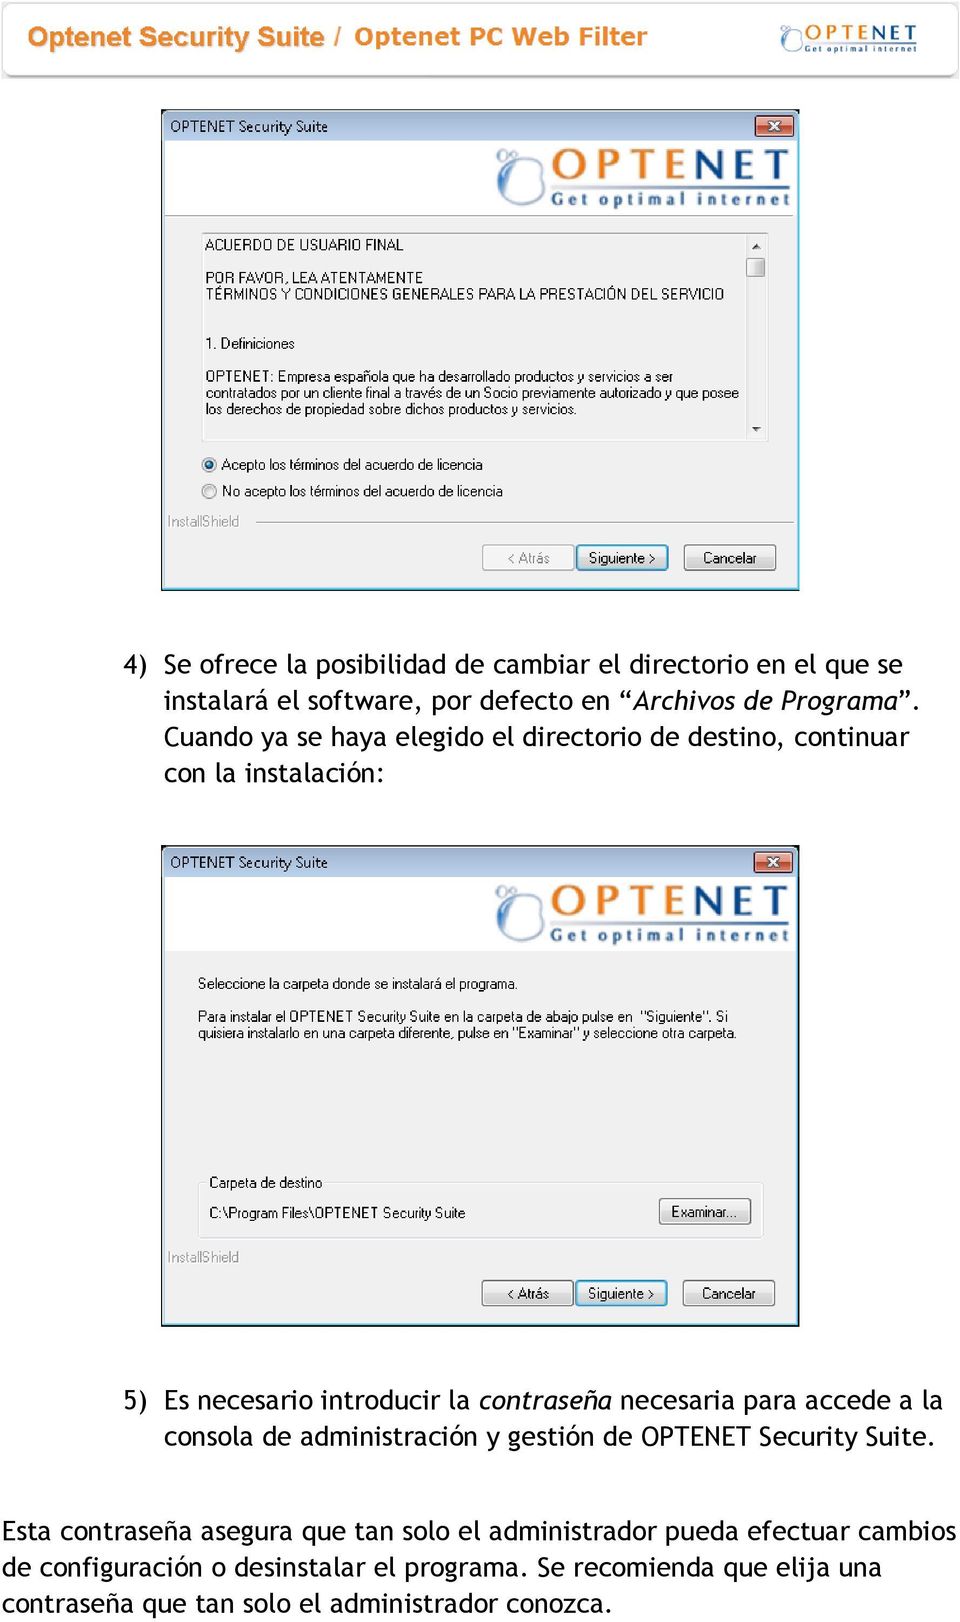 para accede a la consola de administración y gestión de OPTENET Security Suite.